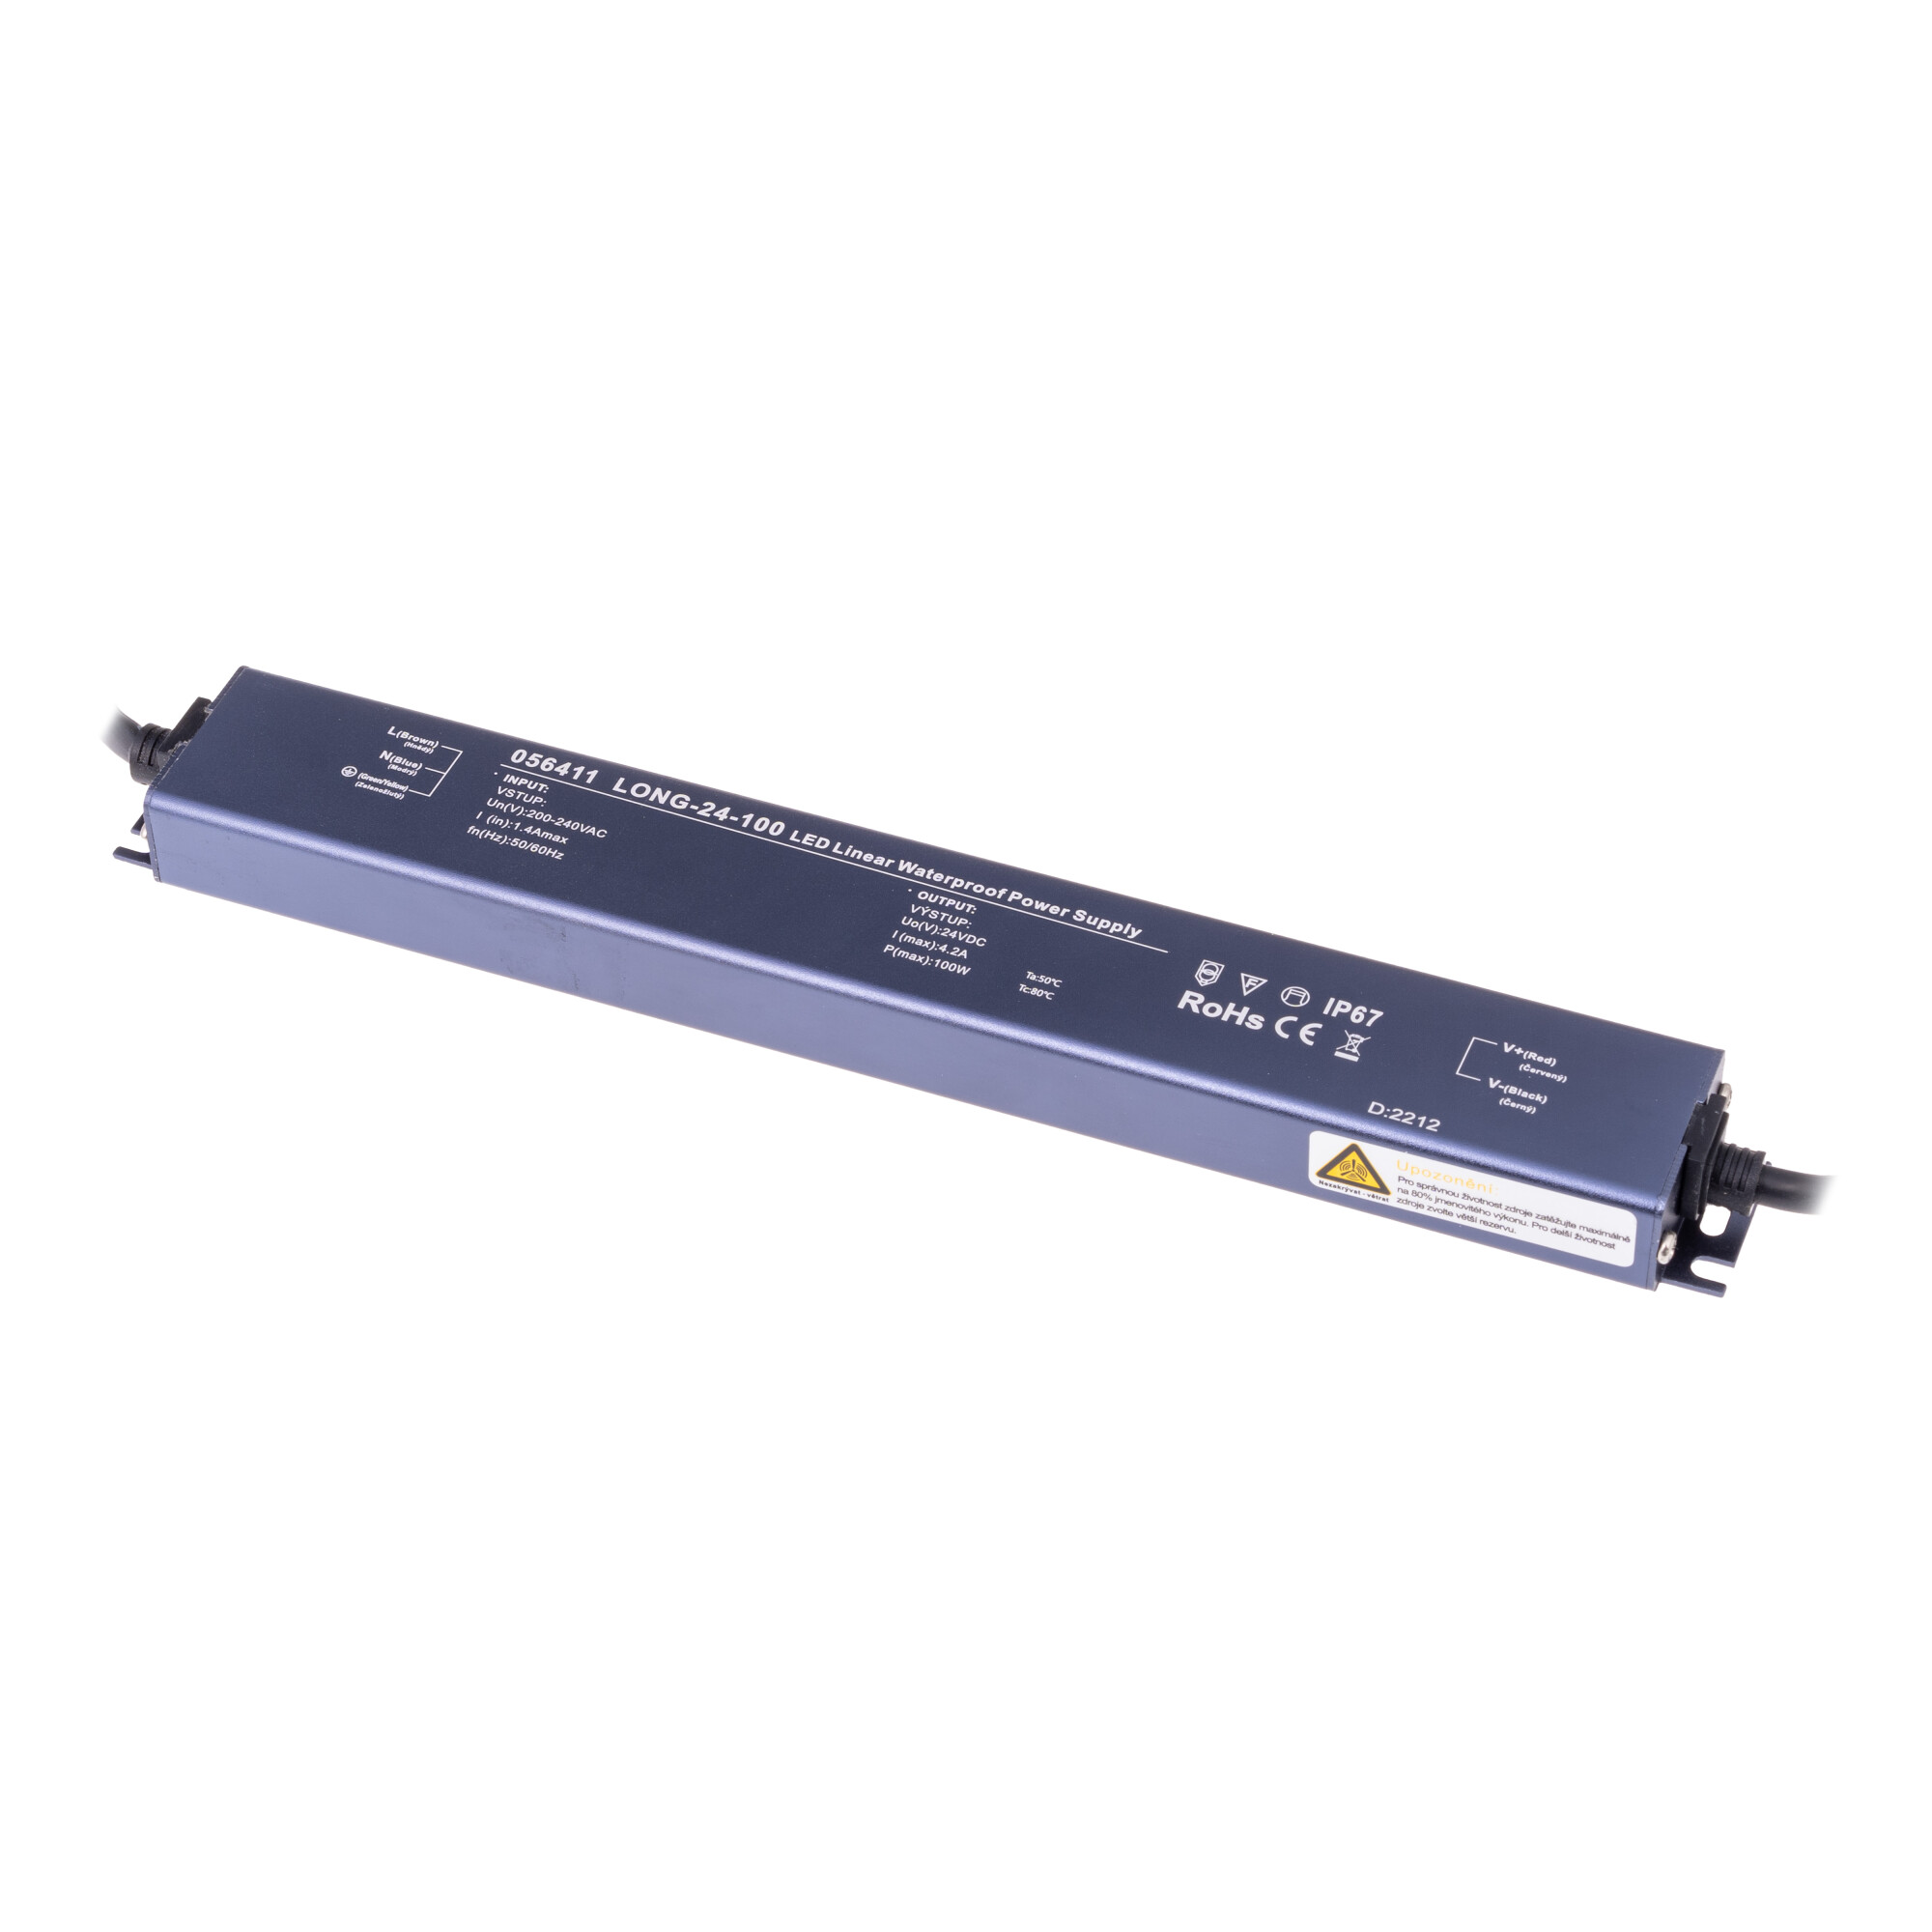 LED zdroj 24V 100W LONG-24-100